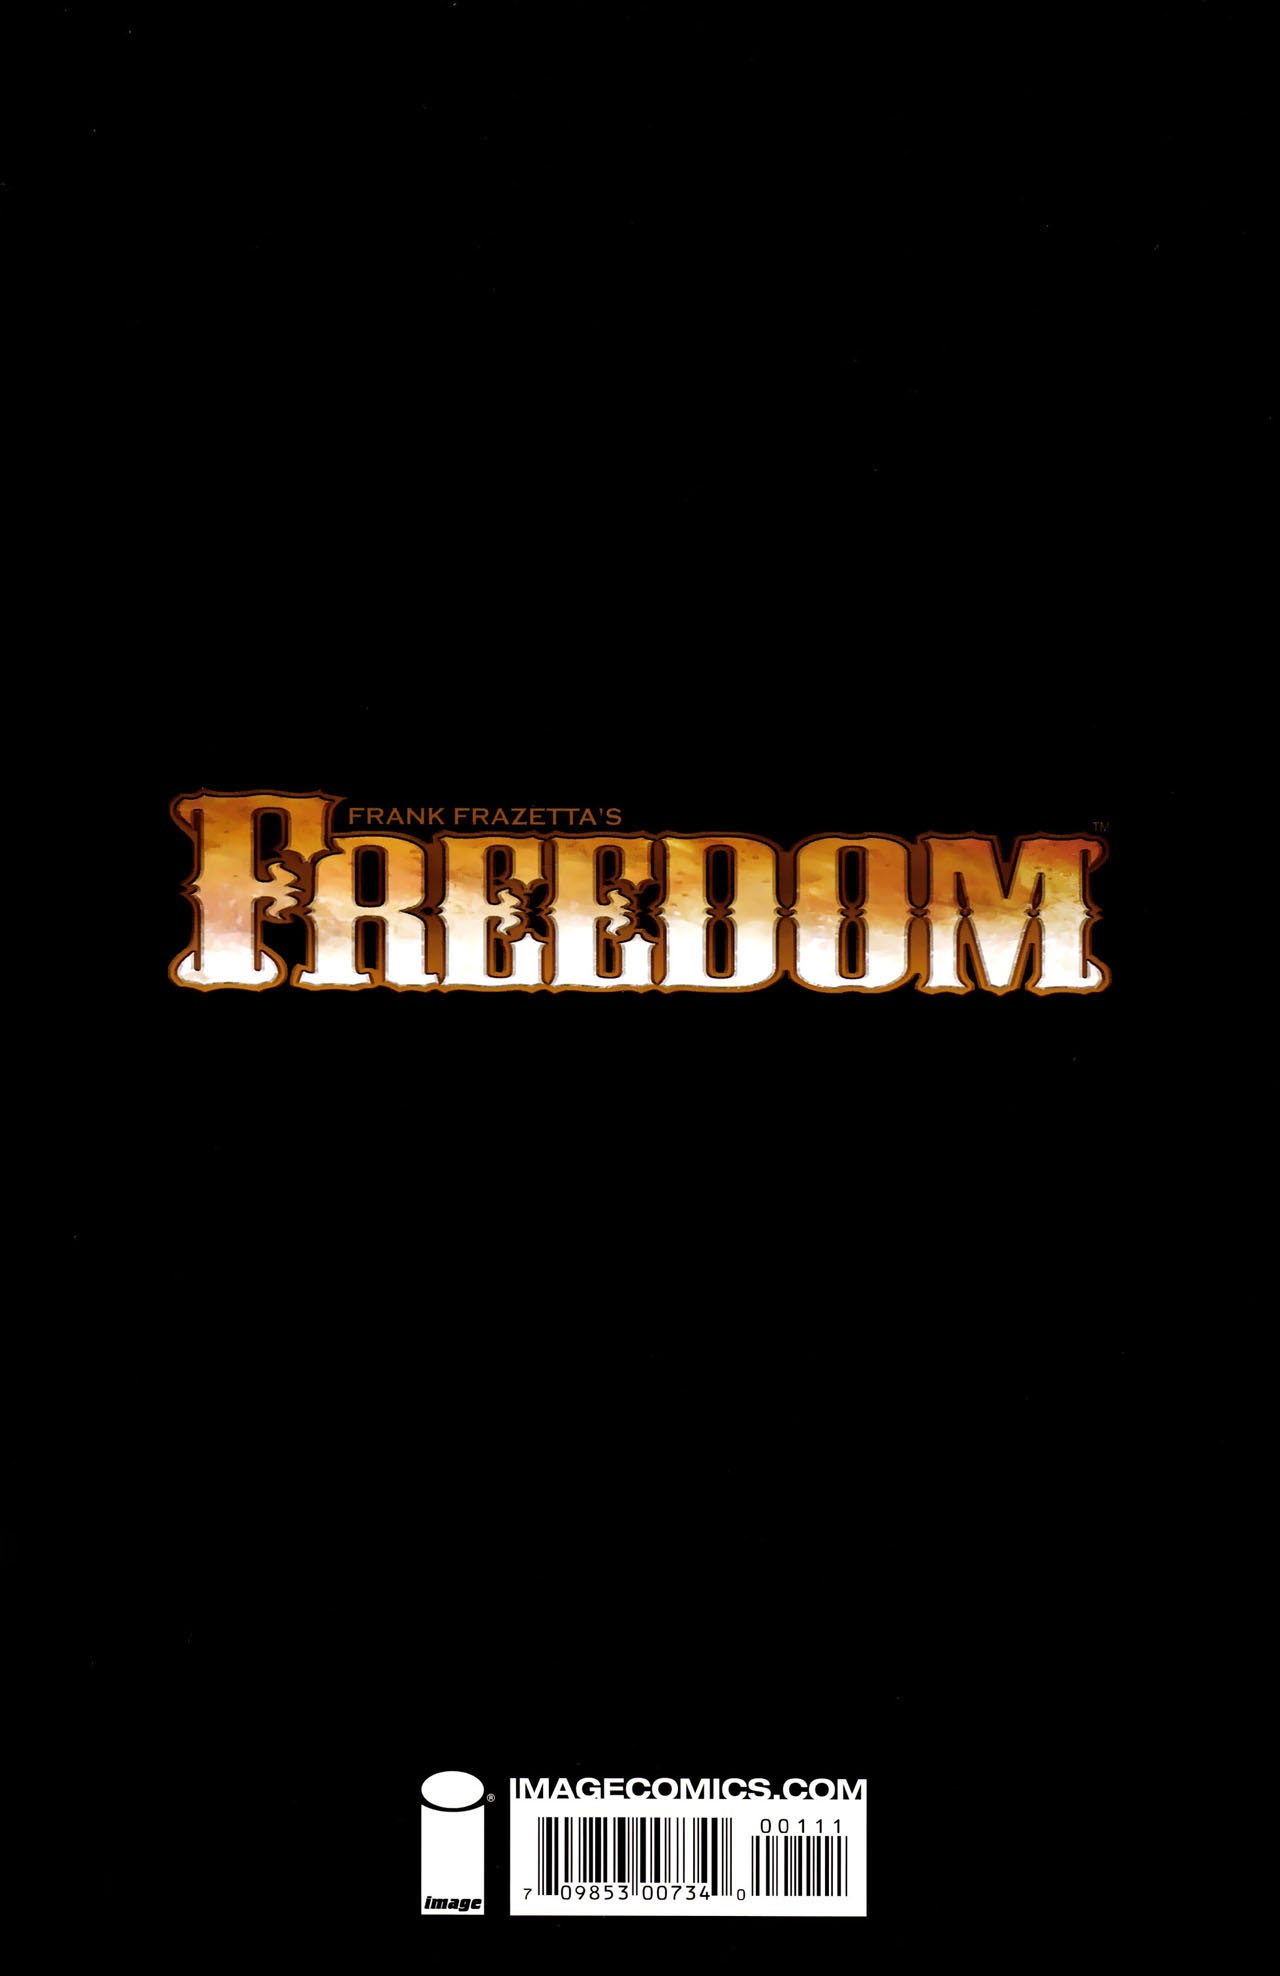 Read online Frank Frazetta's Freedom comic -  Issue # Full - 36